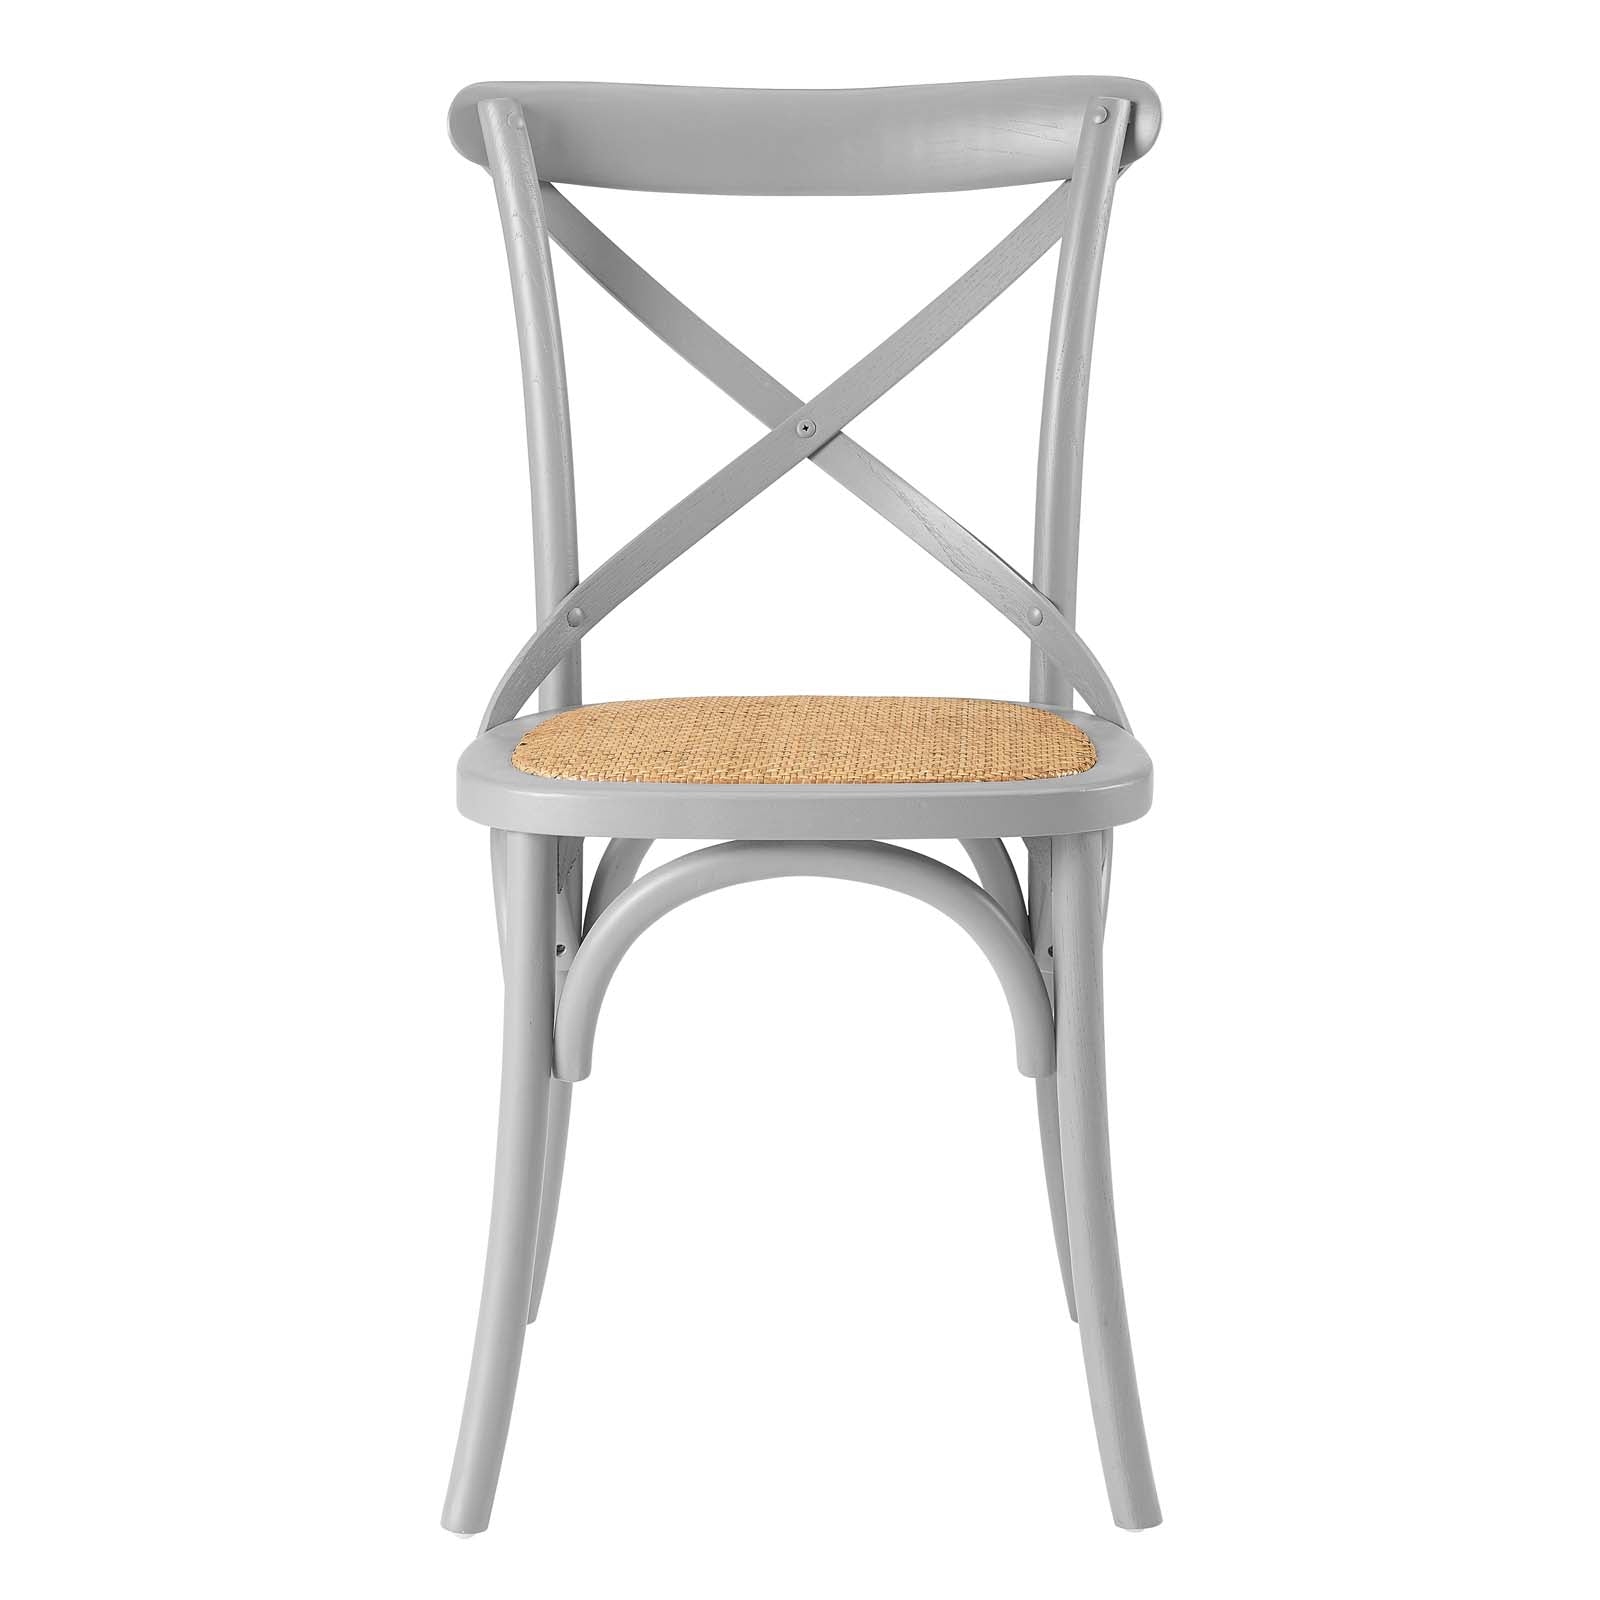 Modway Furniture Modern Gear Dining Side Chair - EEI-1541